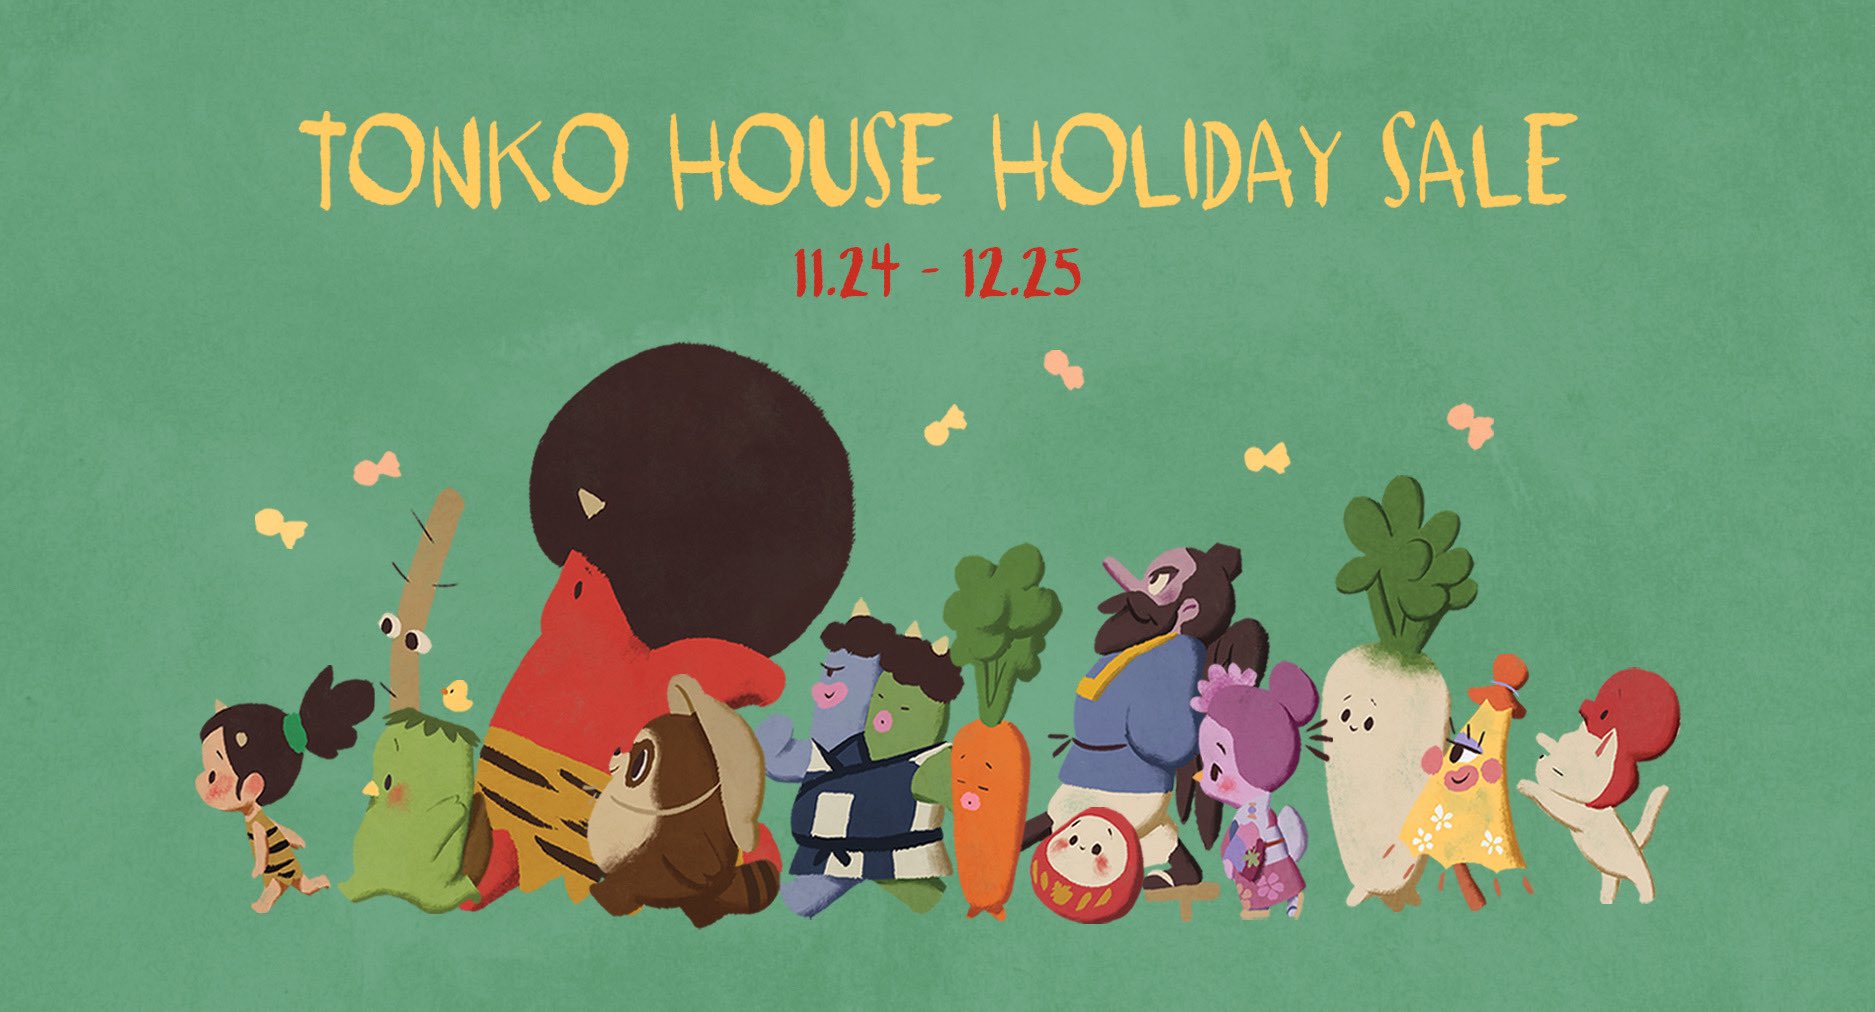 11/24〜12/25まで「TONKO HOUSE HOLIDAY SALE」開催